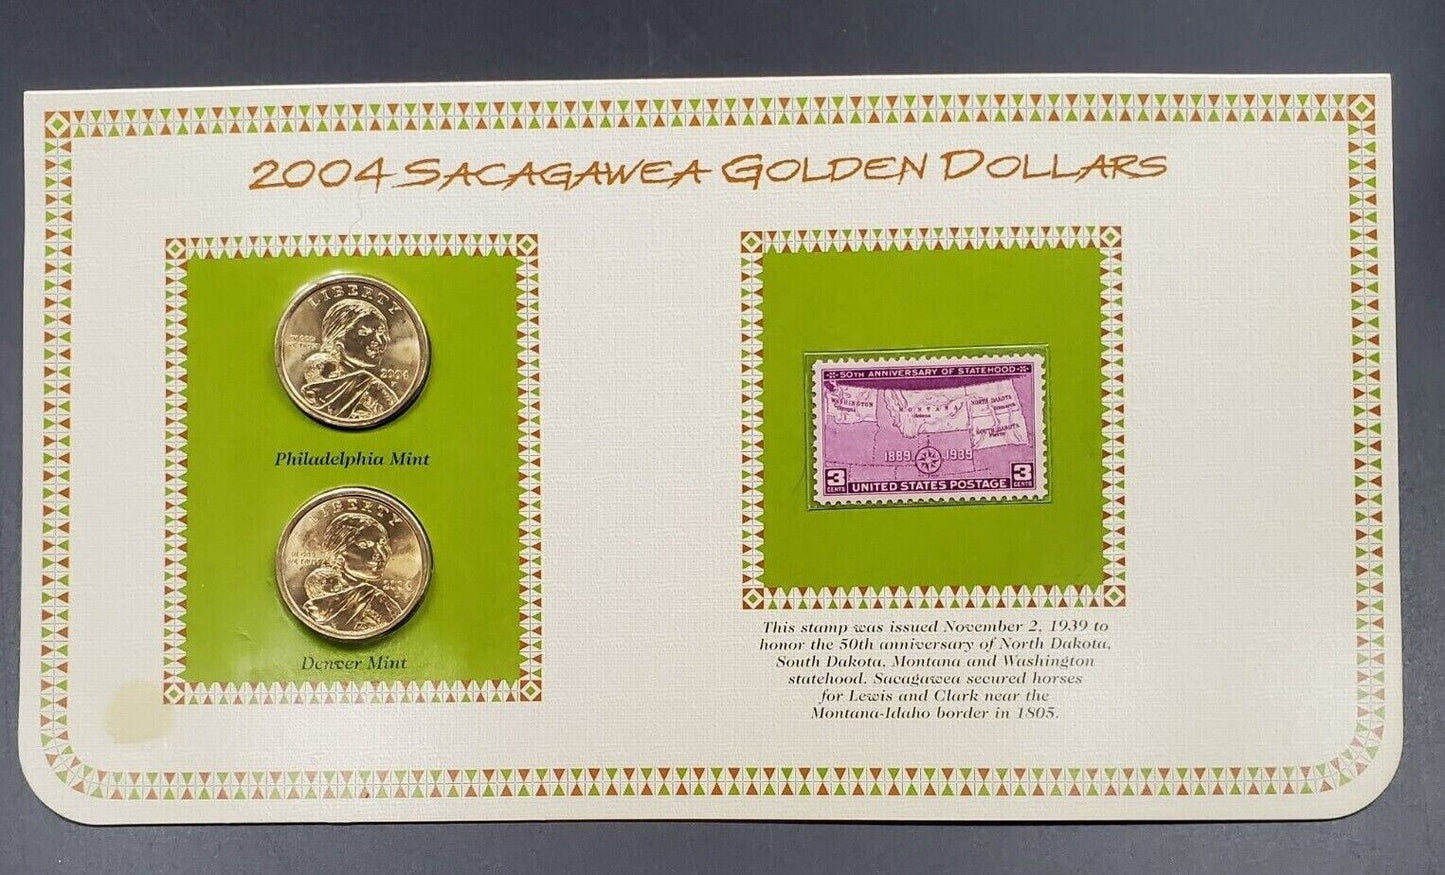 2004 P & D Sacagawea Gold Dollars & 1939 USA 3C Stamp Uncirculated Sheet